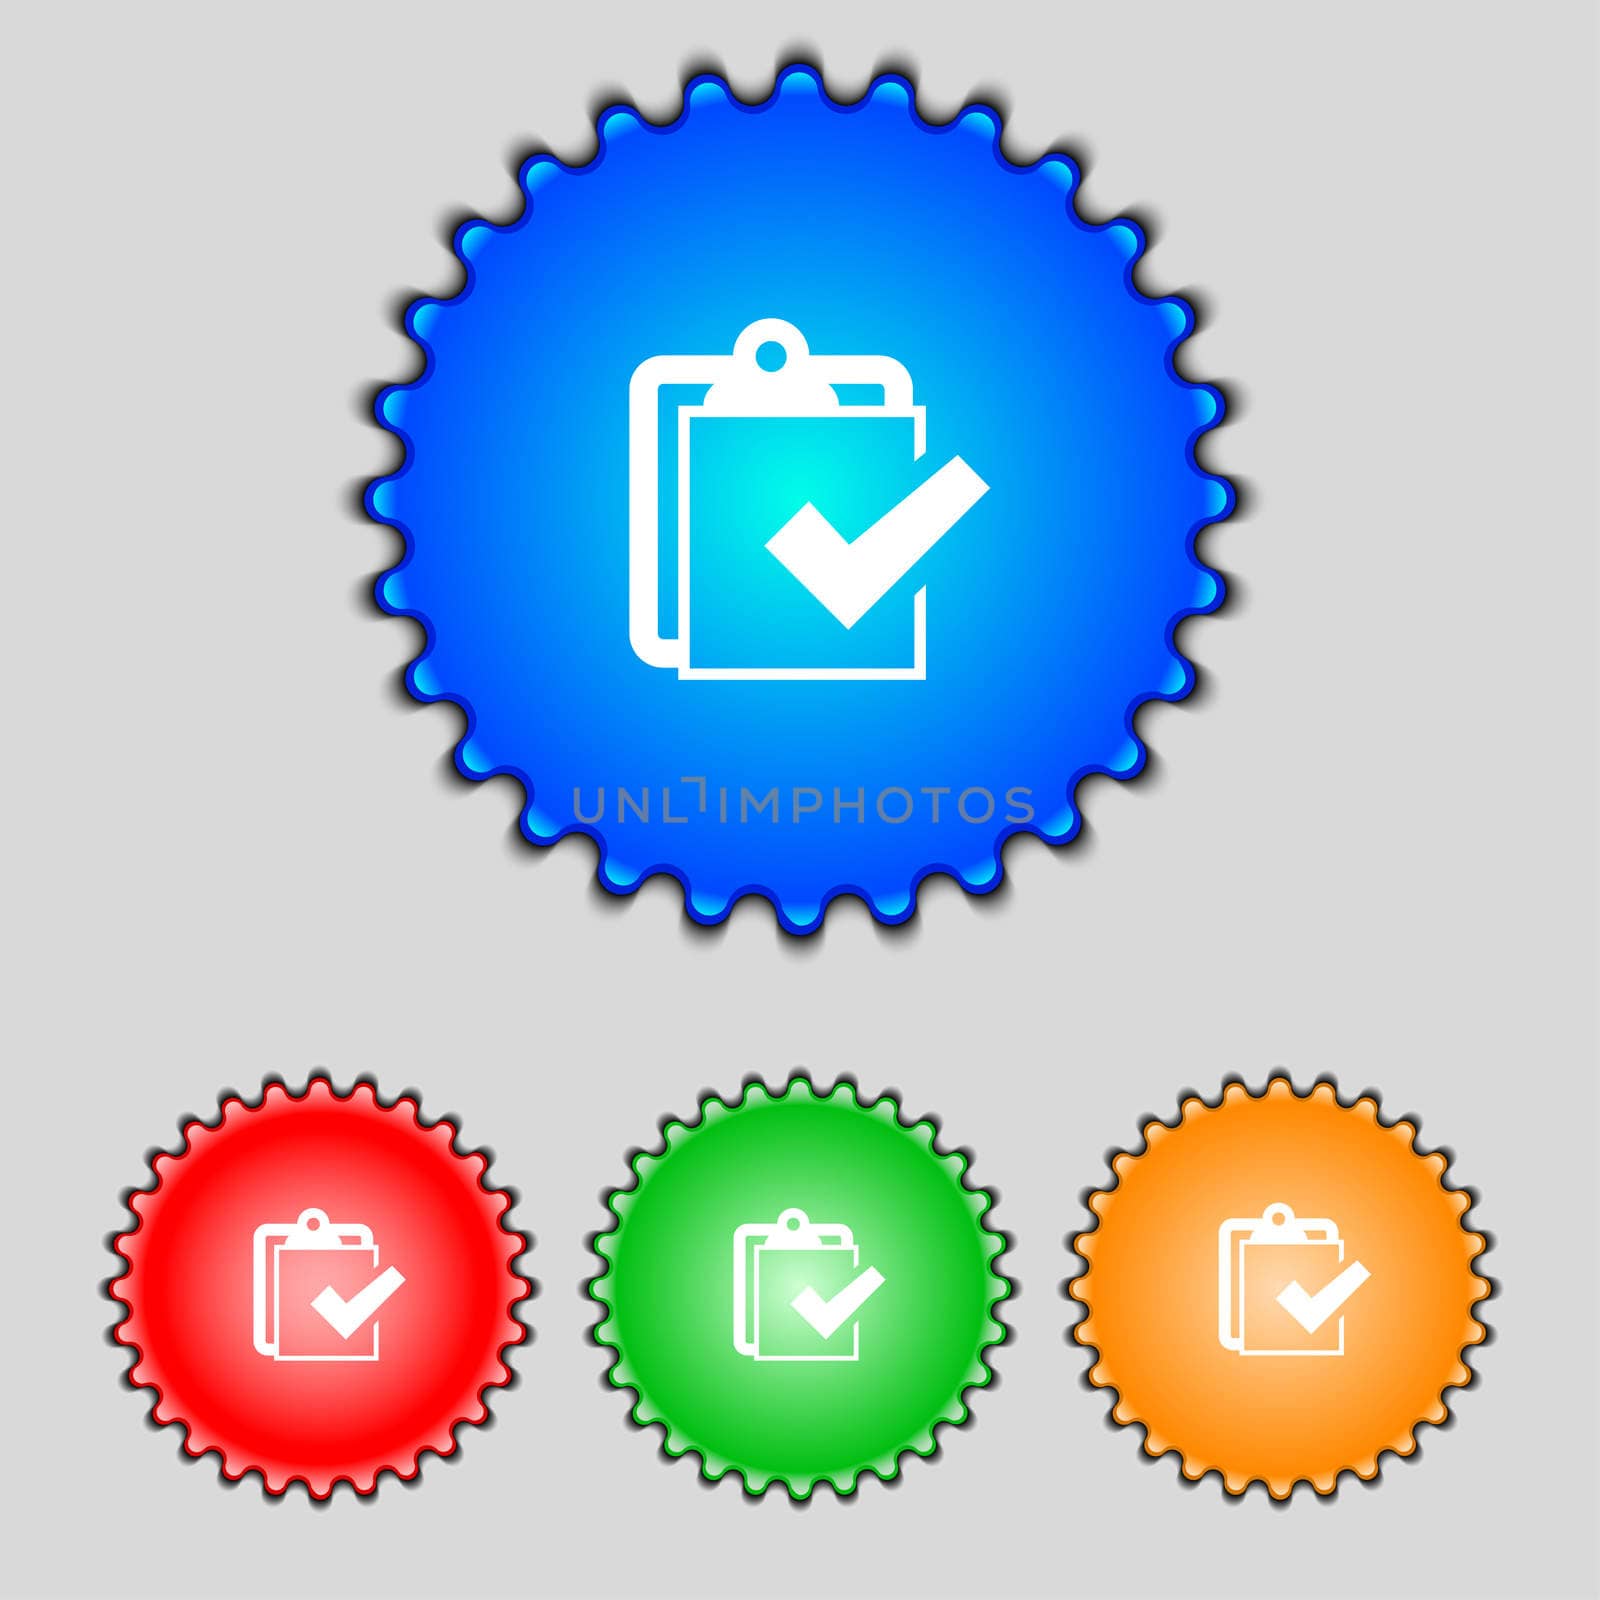 Edit document sign icon. content button. Set colour button. Modern UI website navigation illustration